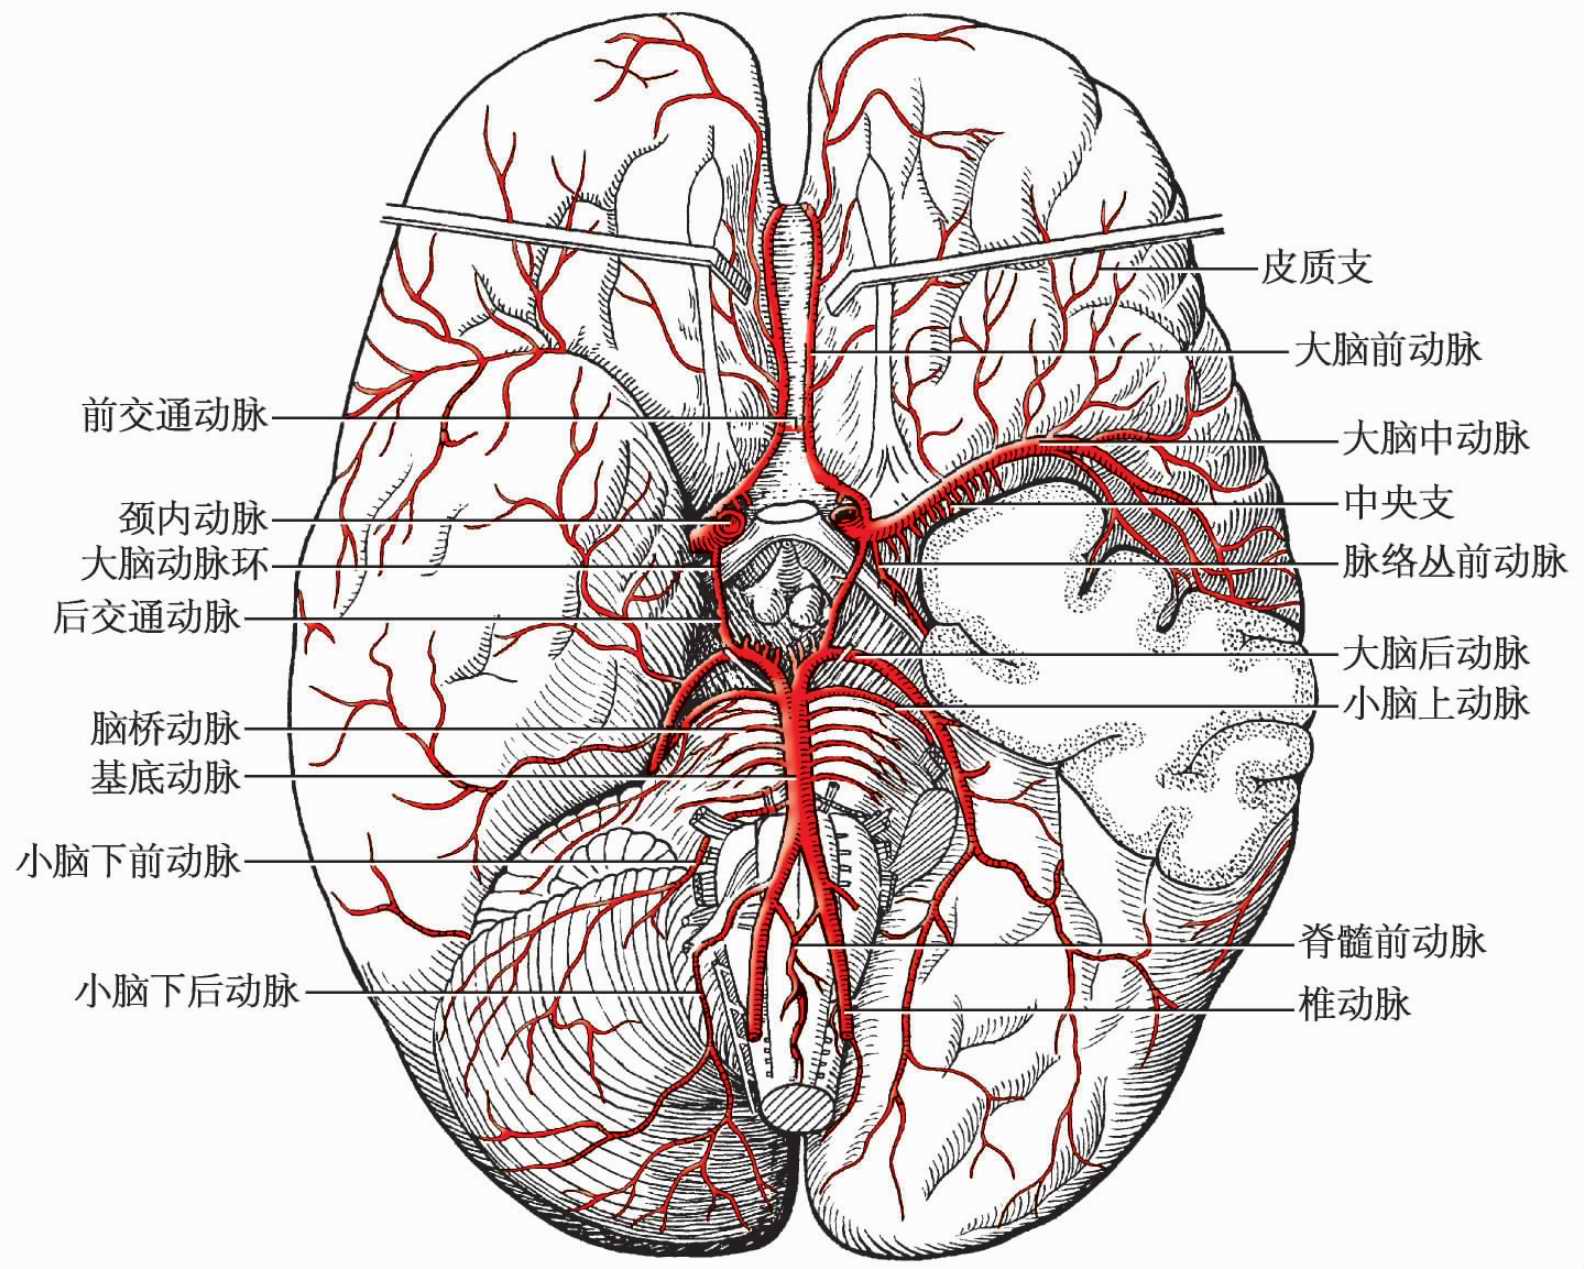 中枢神经系统疾病定位诊断图解——脑血管 - 脑医汇 - 神外资讯 - 神介资讯